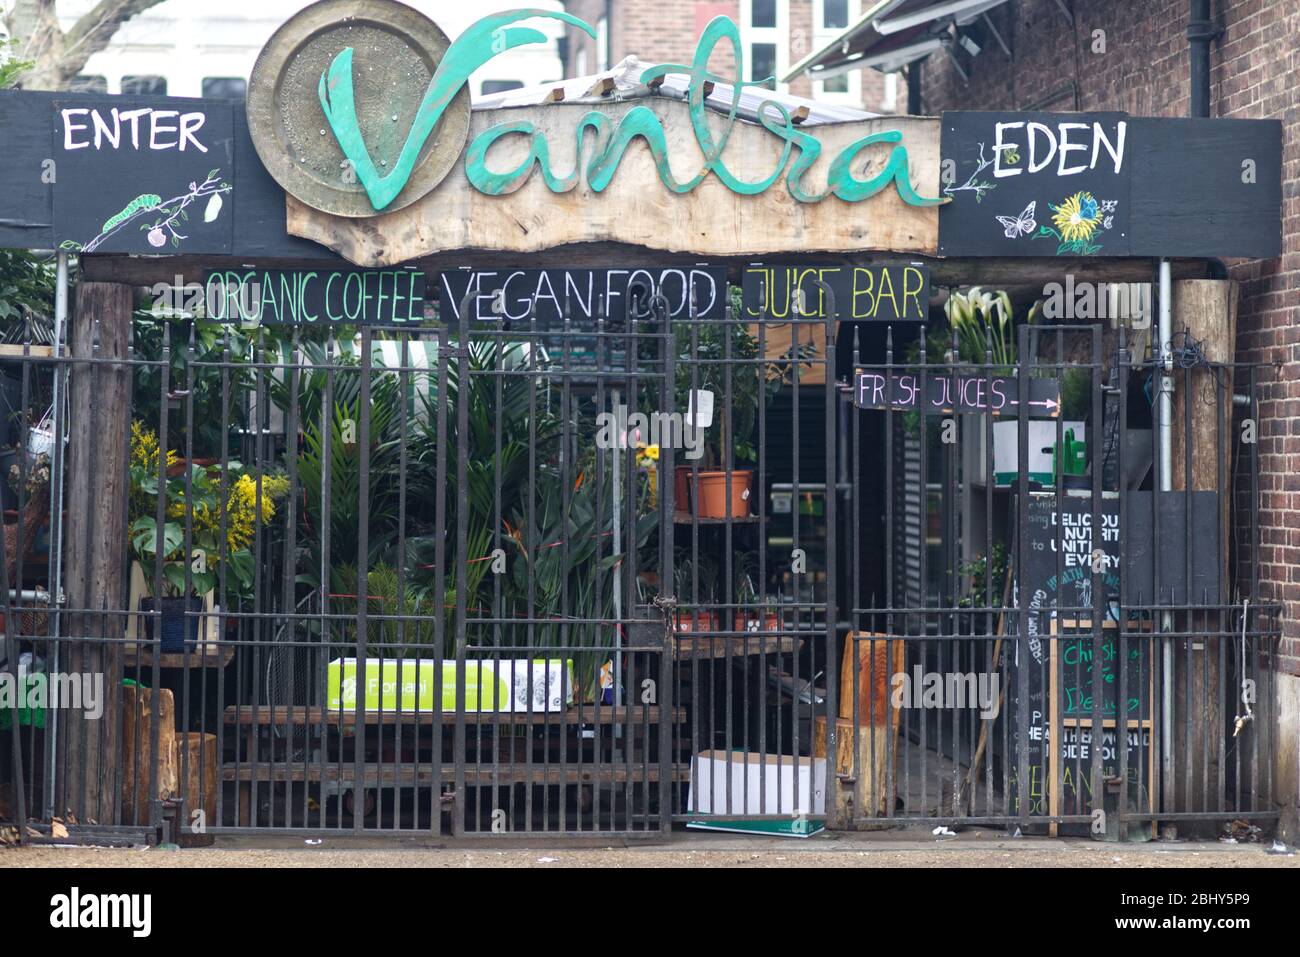 vegan food and organic coffee bar in London Stock Photo